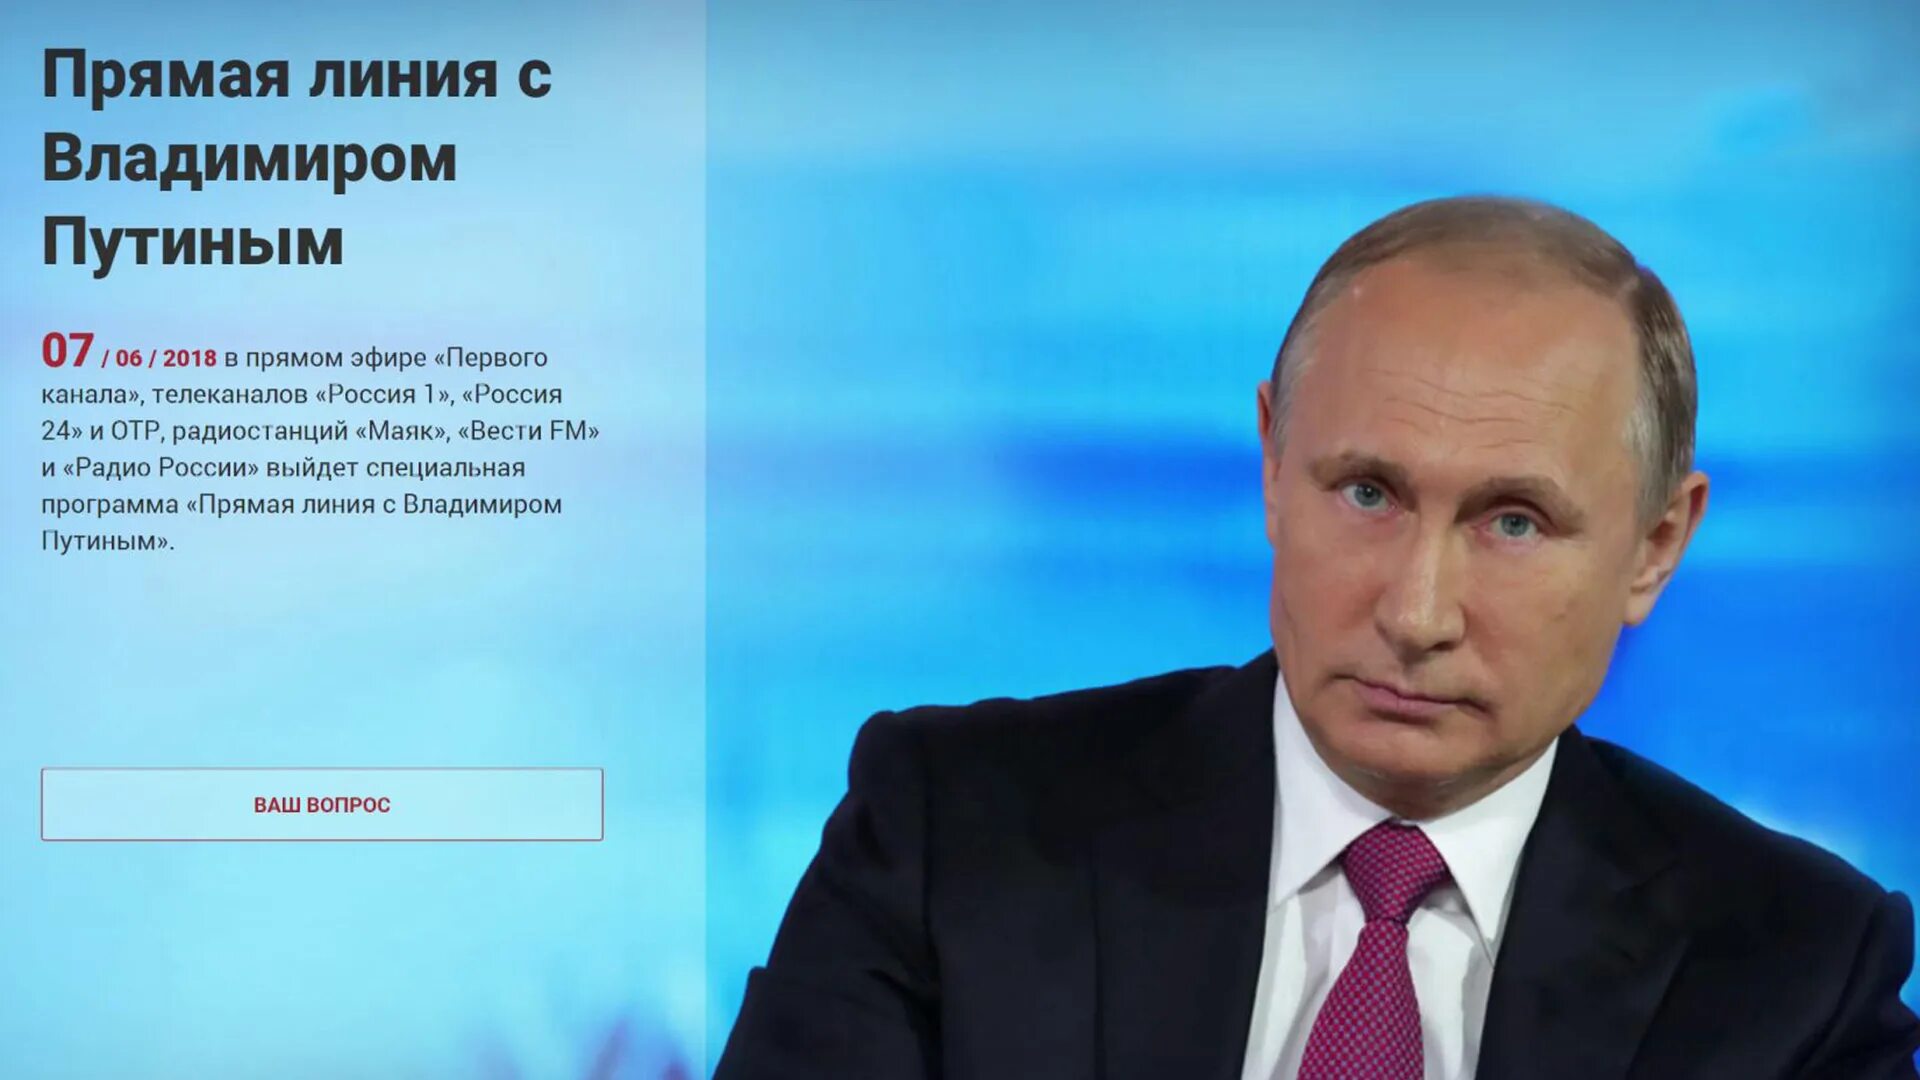 Прямой эфир президента первый канал. Прямая линия с Путиным. Прямая линия с президентом. Номер Путина. Прямая линия 2018.